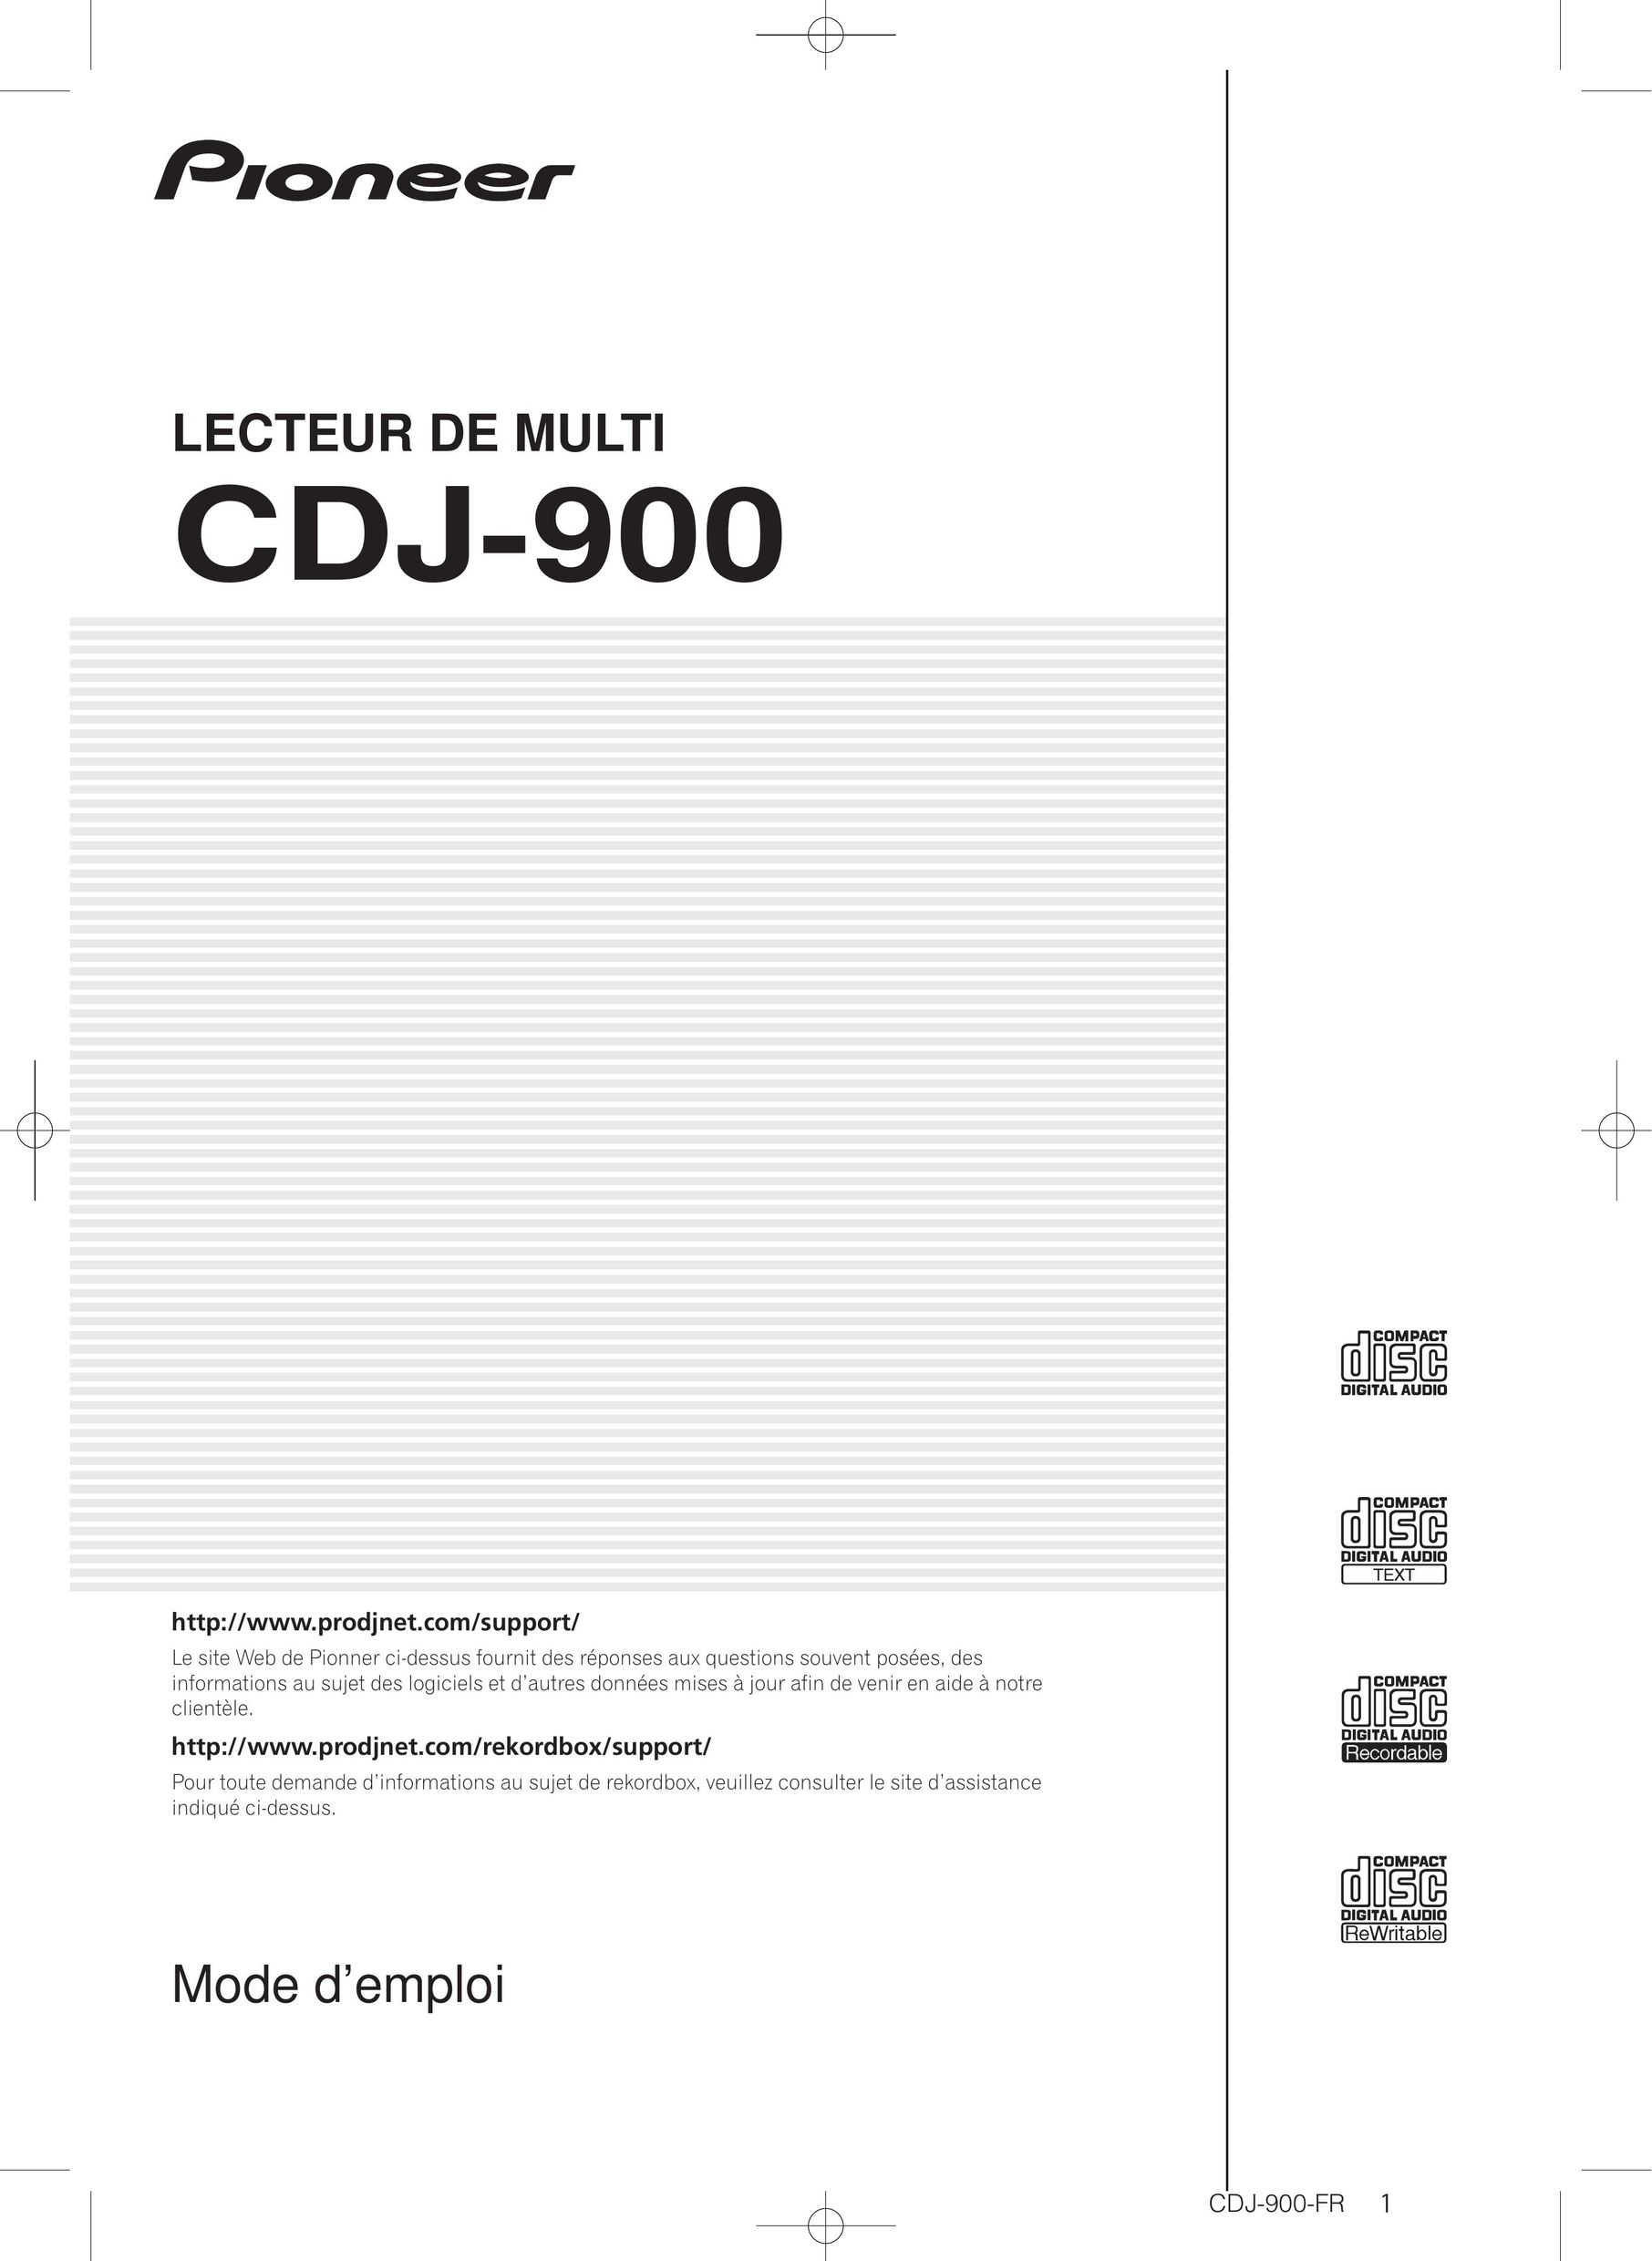 Pioneer CDJ-900 CD Player User Manual